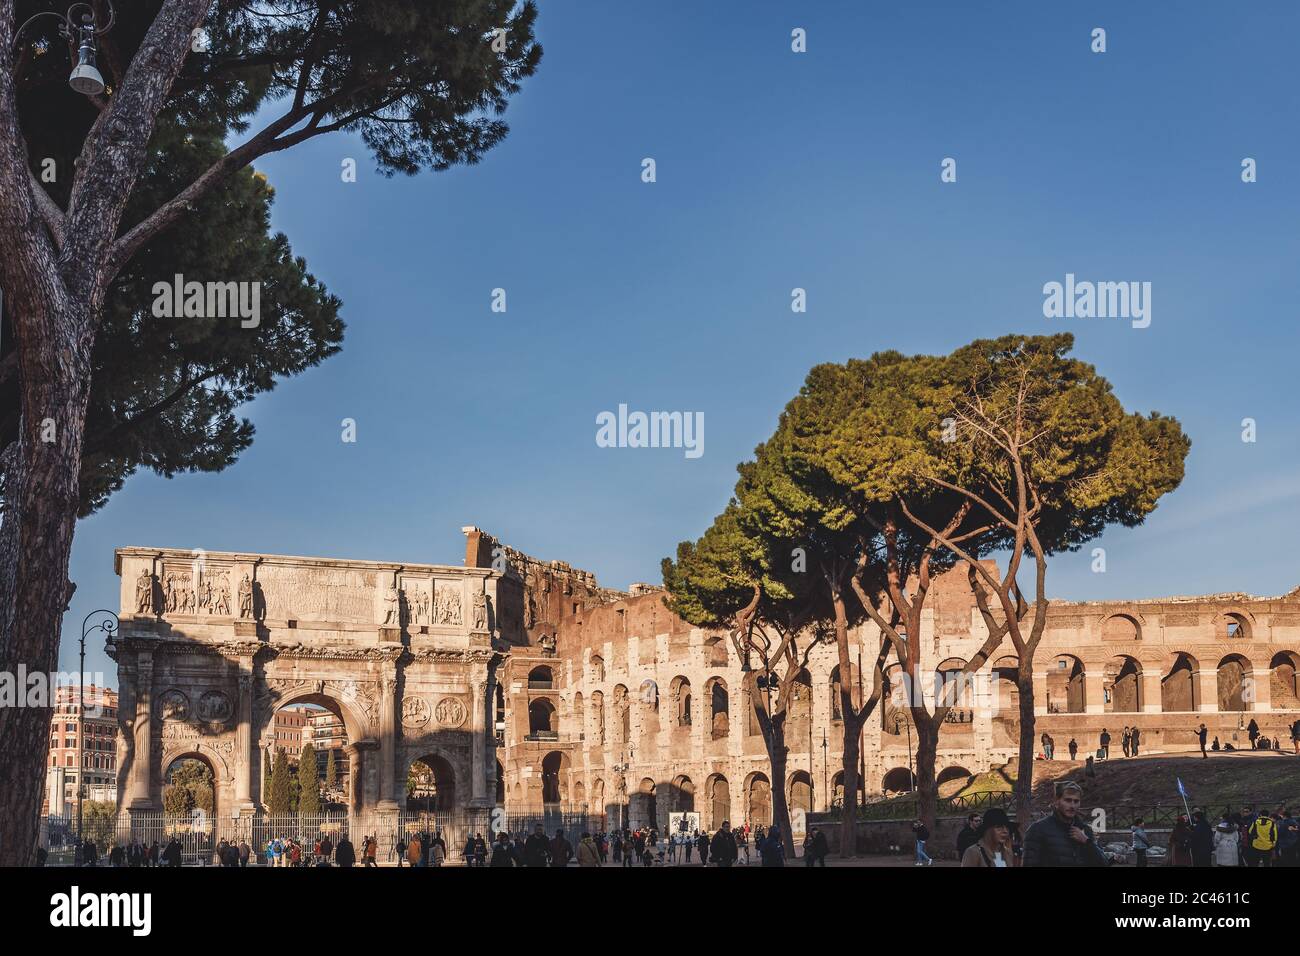 Triumphal arch Rome – Arco di Costantino with Colosseum Stock Photo